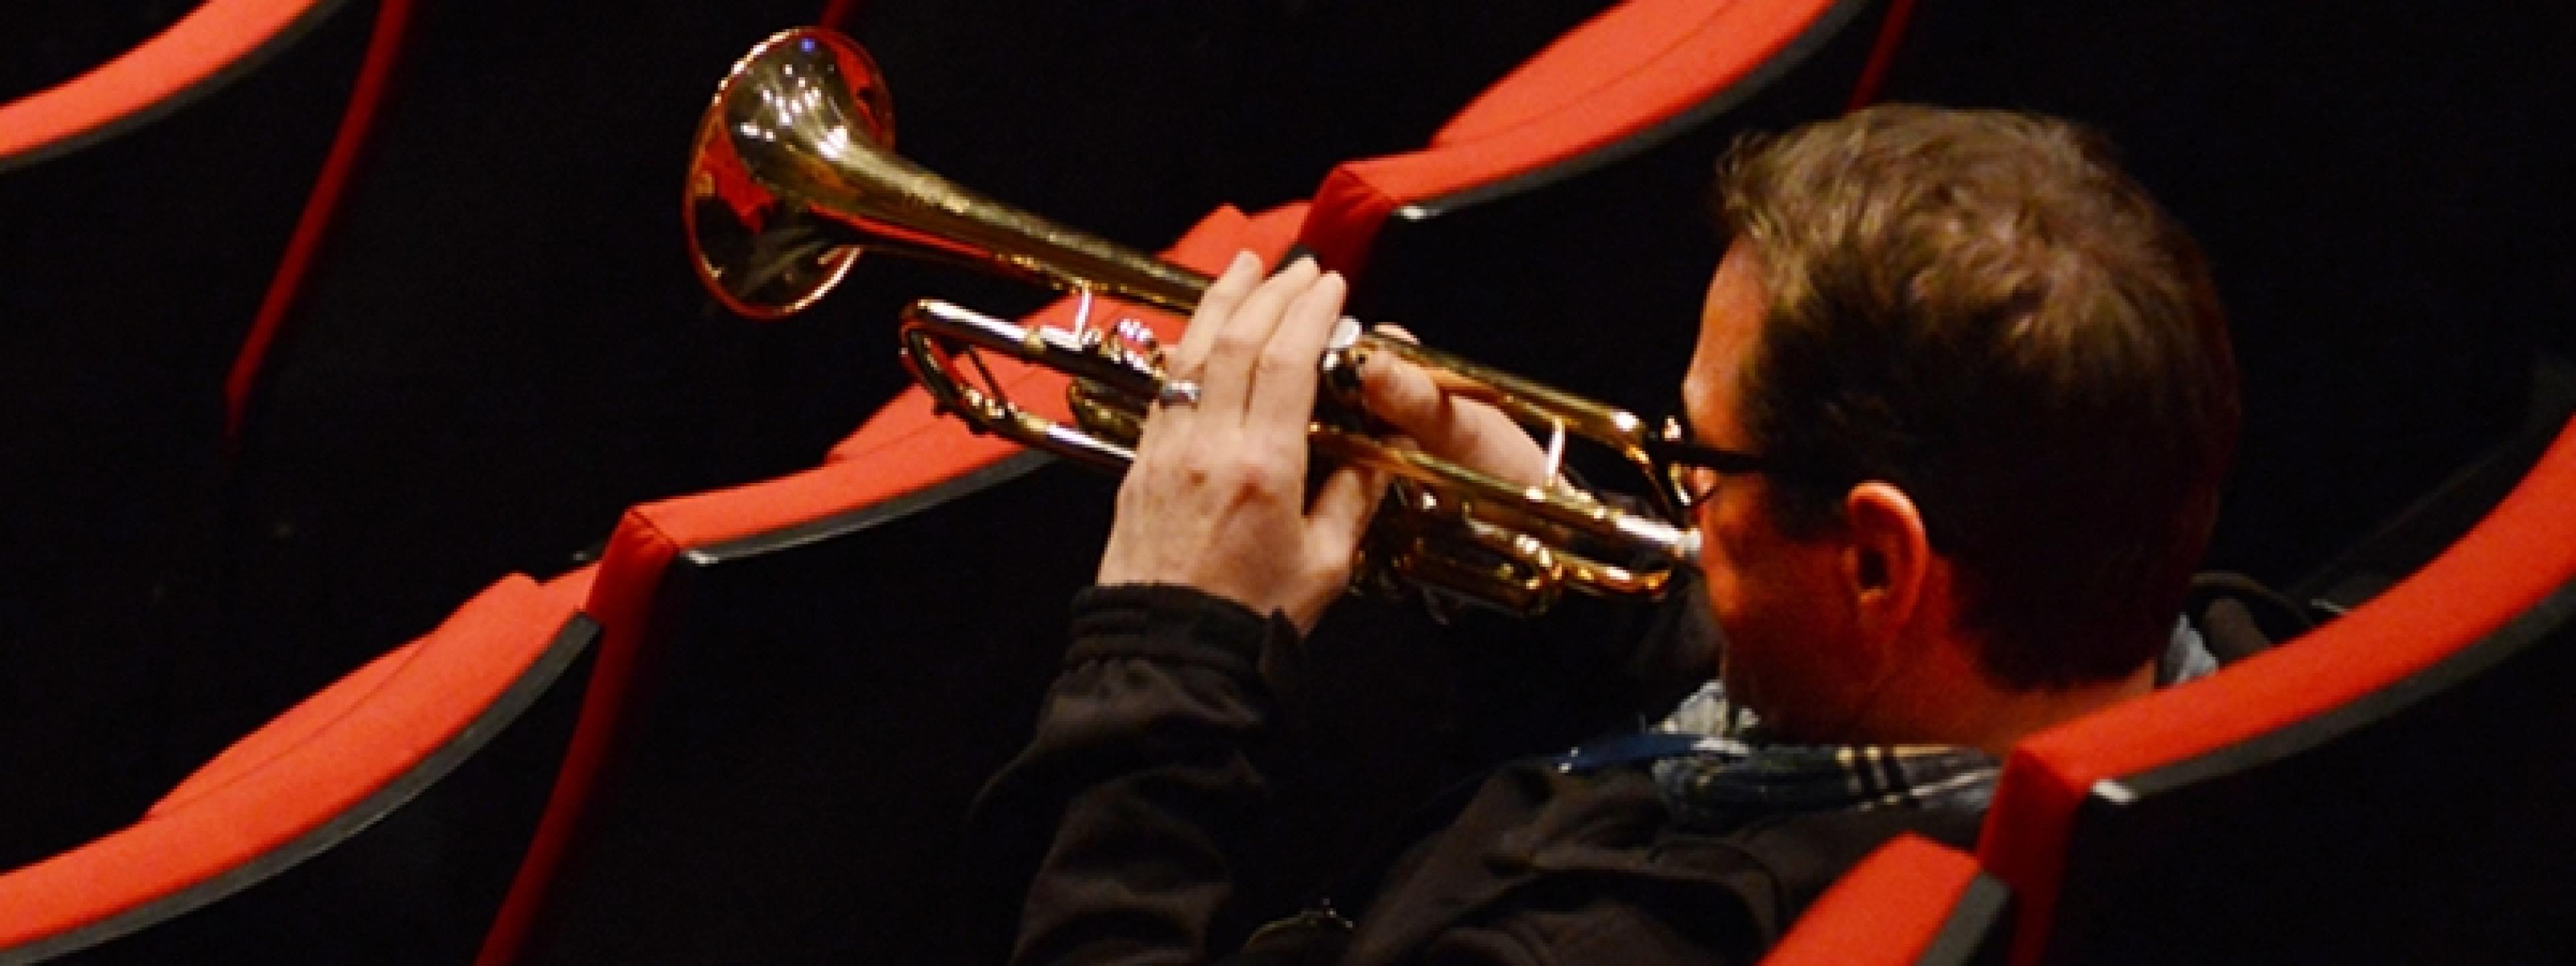 Der Trompeter der NDR Bigband, Ingolf Burkhardt, sitzt in den Rängen eines leeren Konzertsaals und bläst sein Instrument.